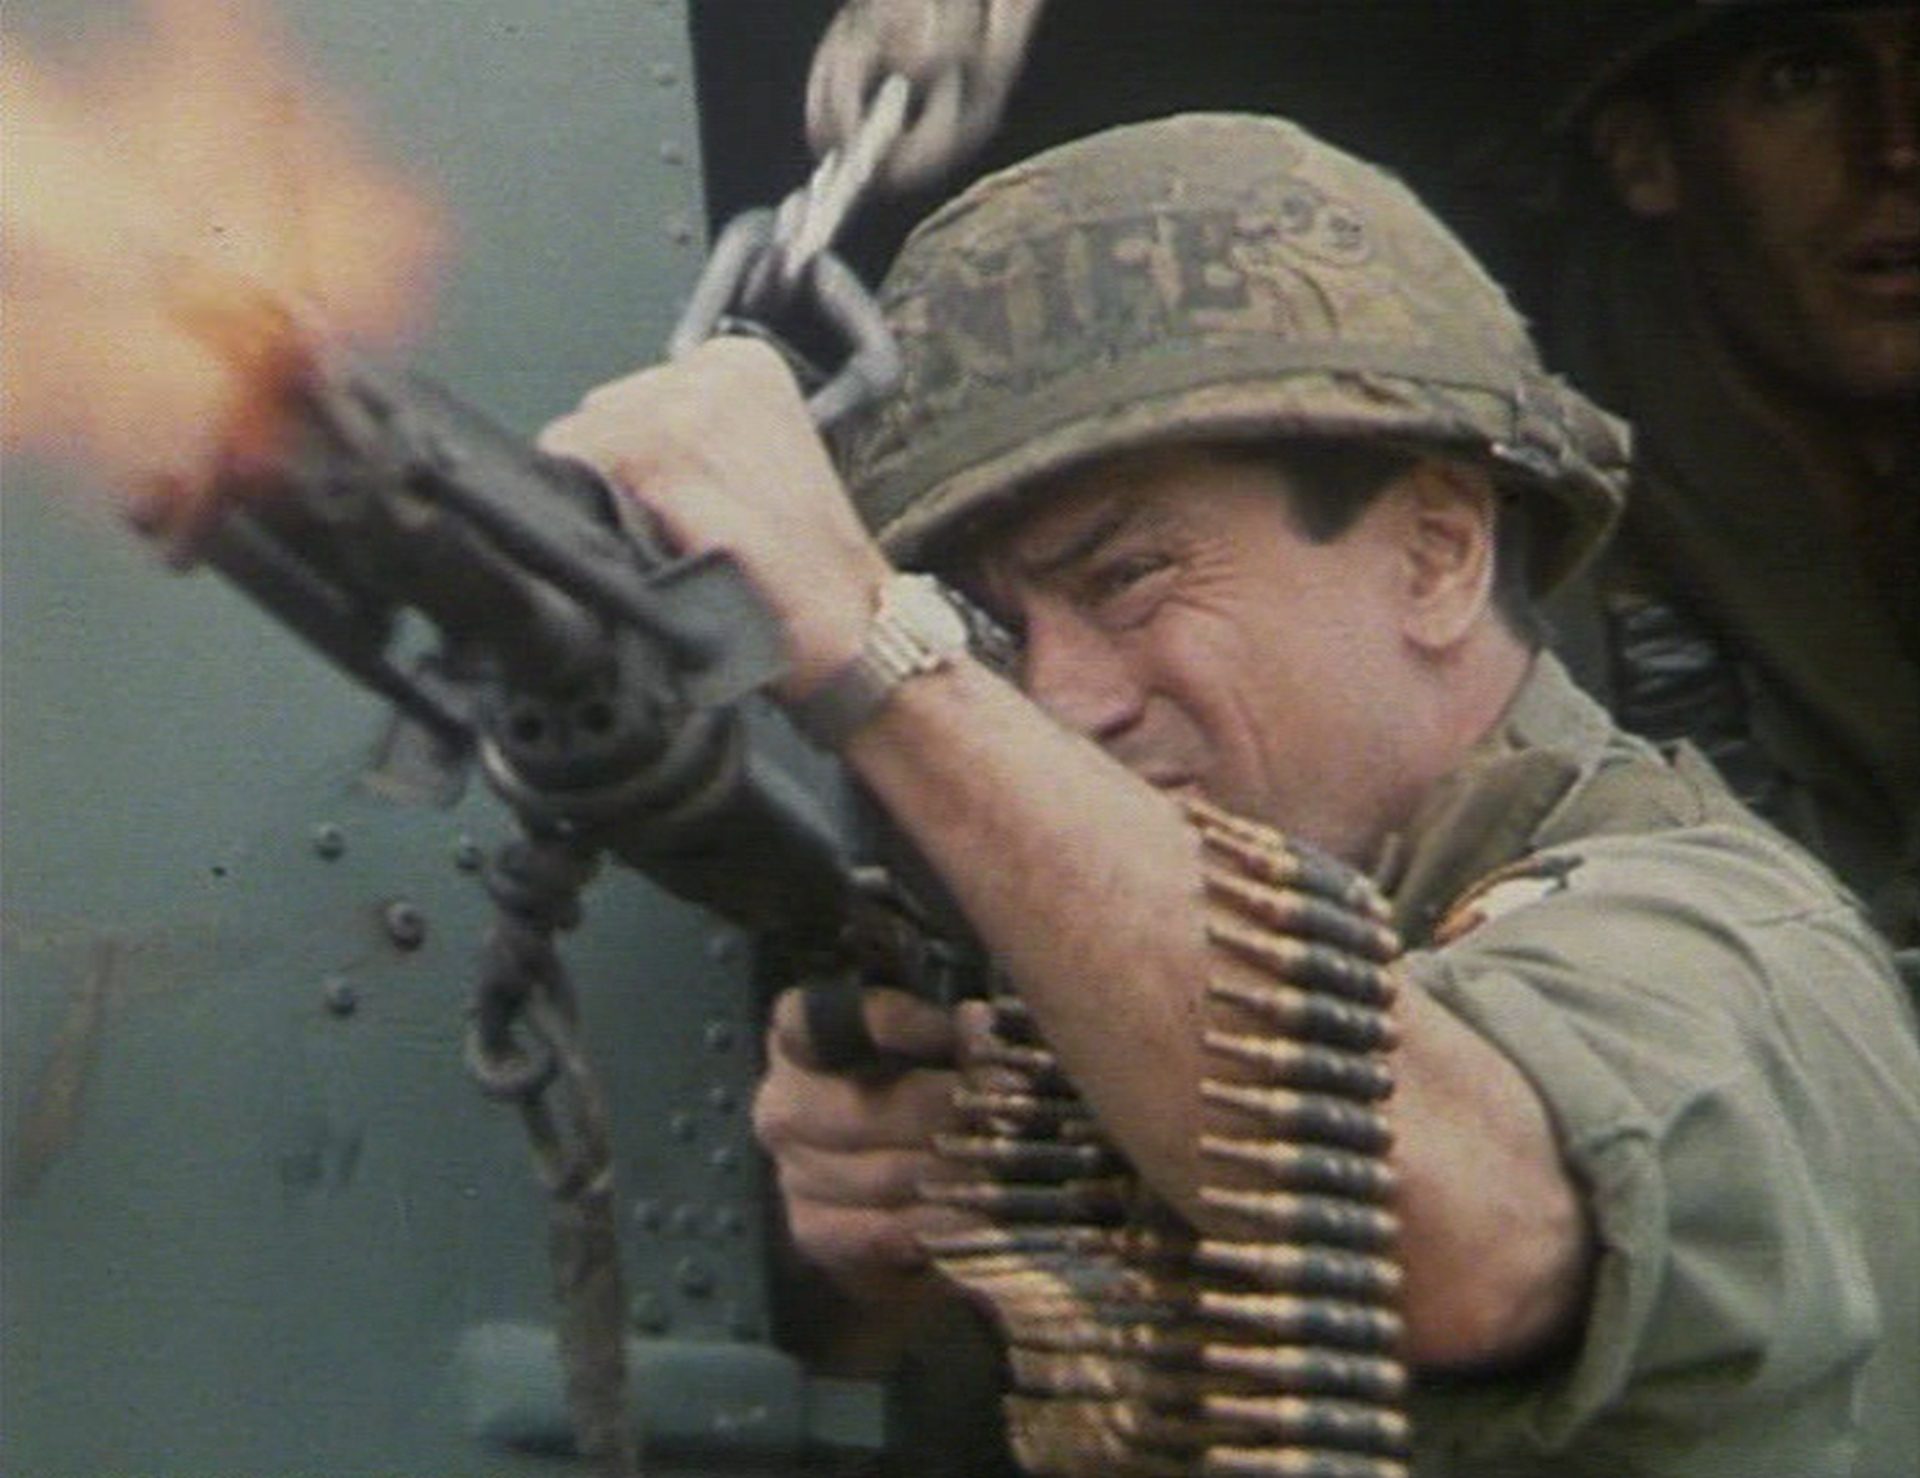 Nahaufnahme von Robert De Niro in Soldatenmontur beim Abfeuern eines Maschinengewehrs, einen Patronengurt um den Unterarm gewickelt.